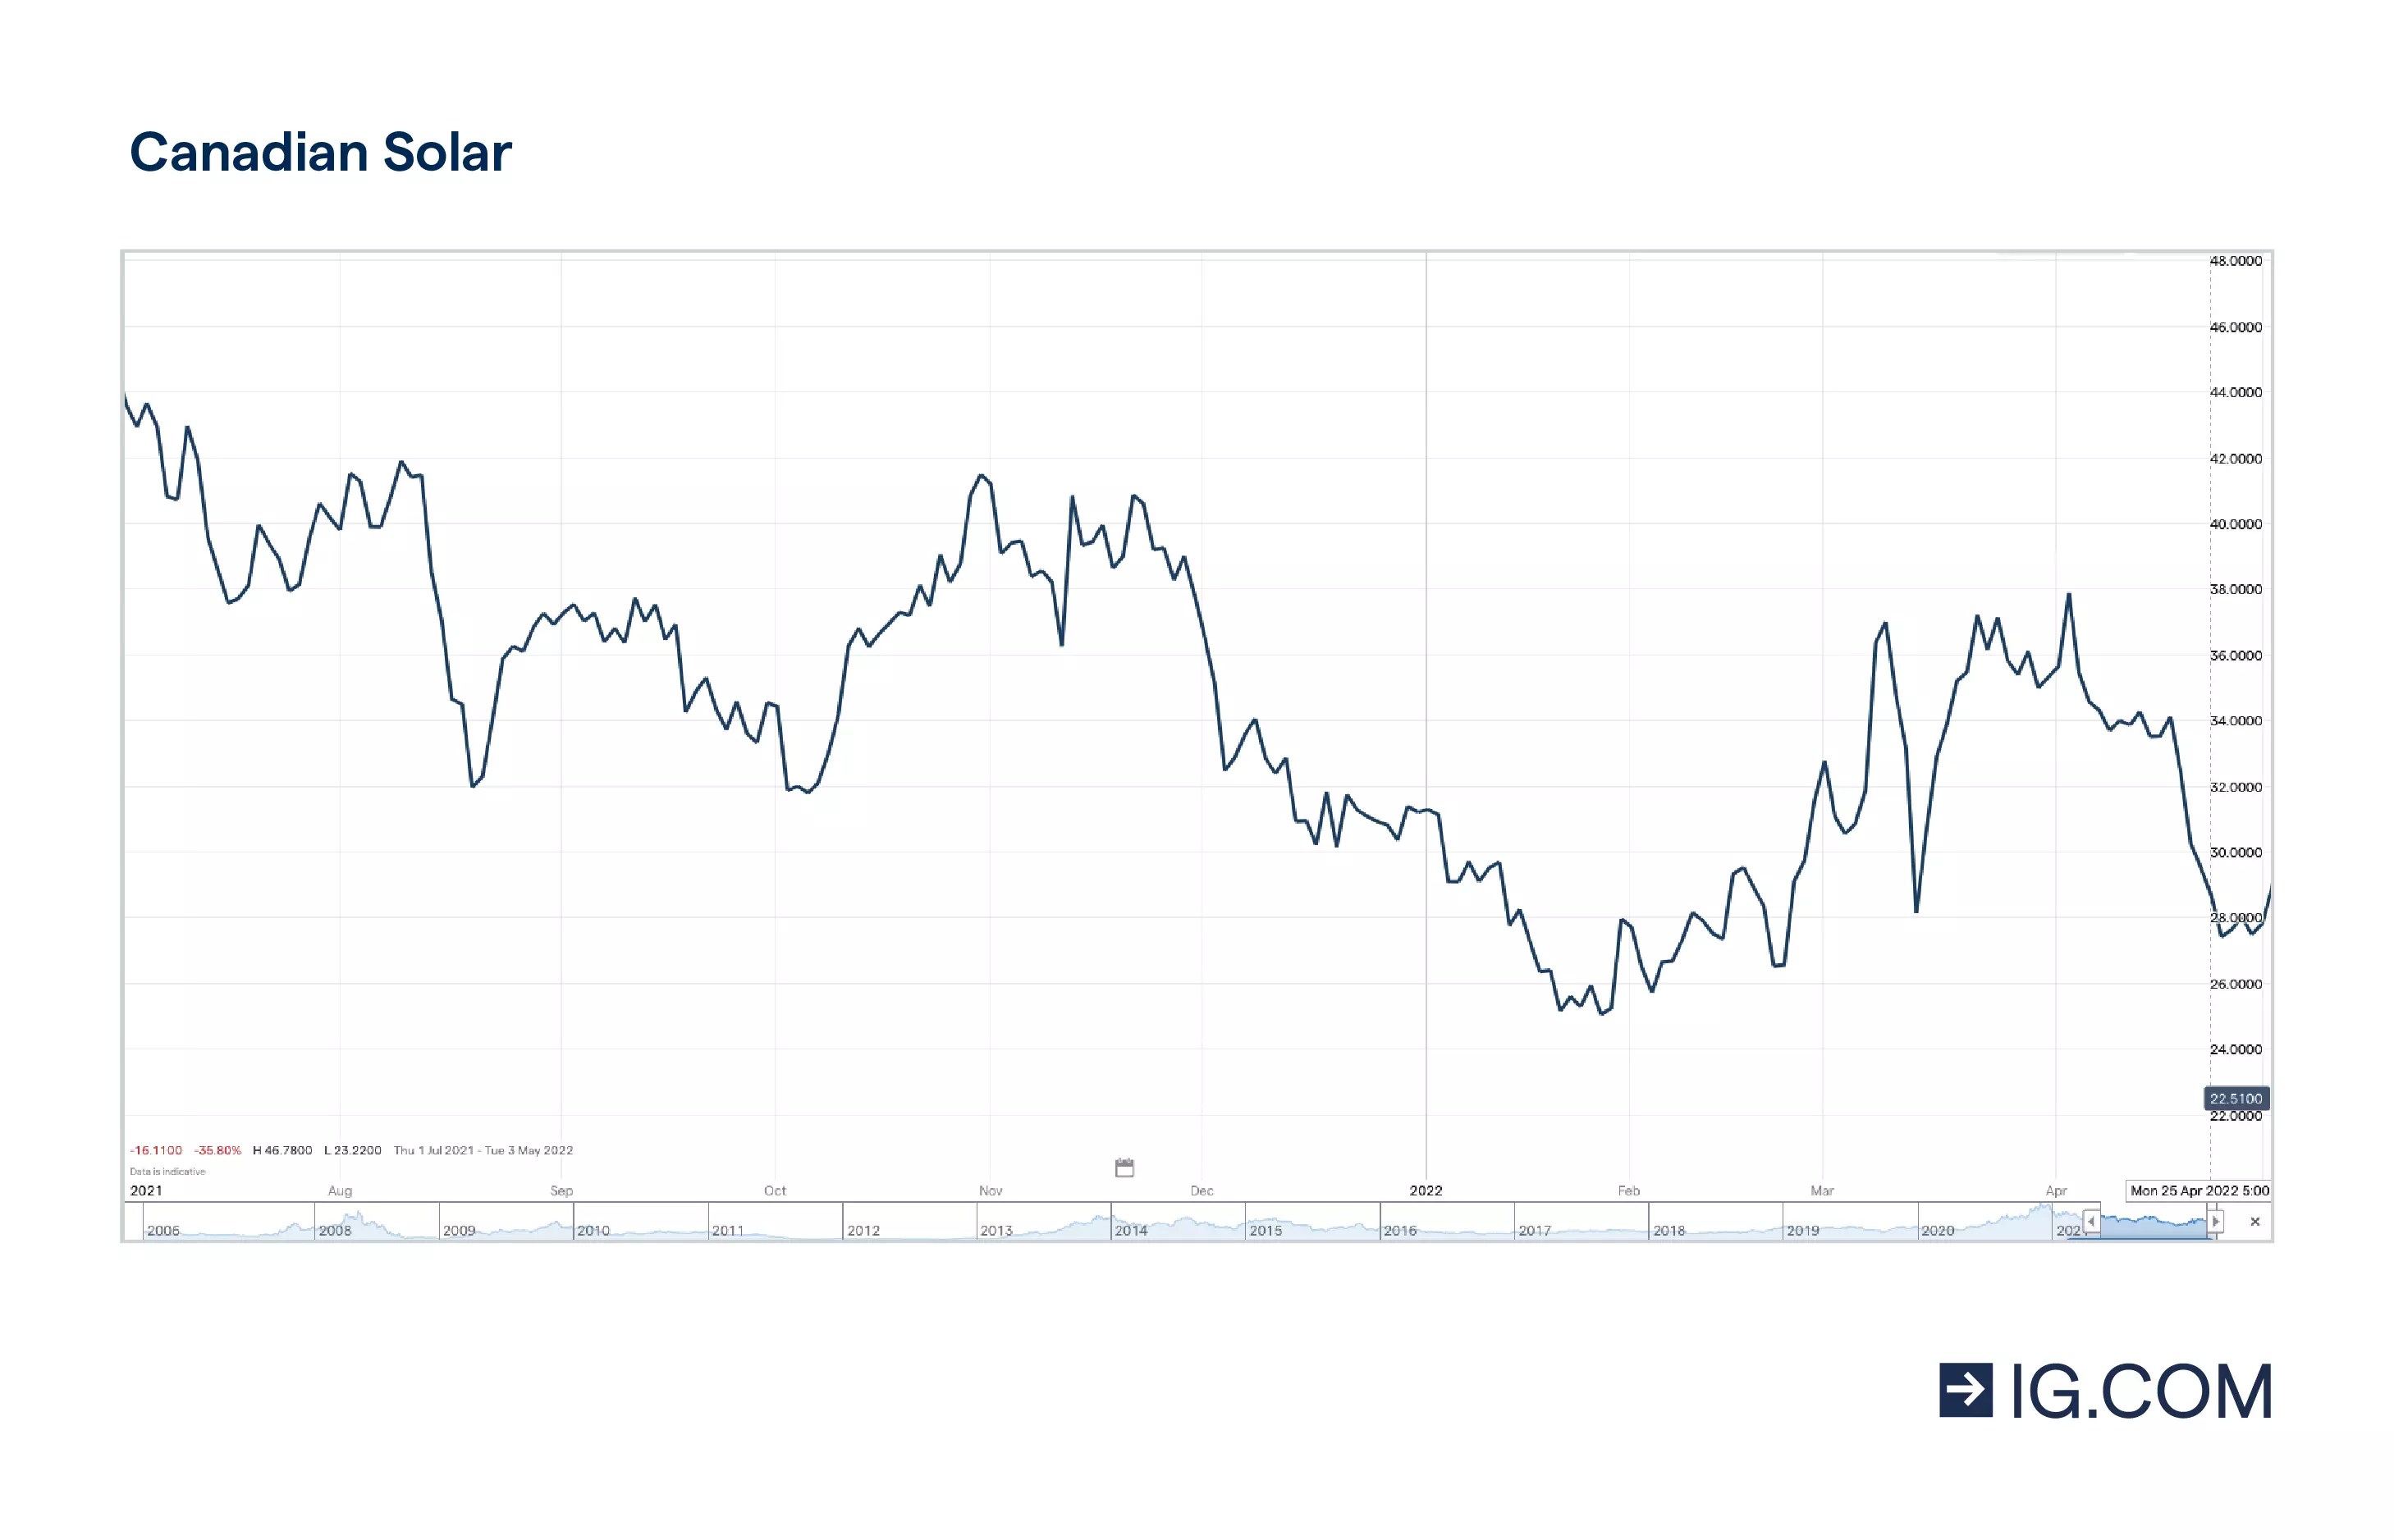 Il grafico a linee mostra il titolo Canadian Solar su un orizzonte temporale di un anno, in cui la quotazione ha toccato vari livelli, con un massimo di 46,8 $ nel luglio del 2021, prima di un leggero calo, e 34,5 $ nell'aprile del 2022